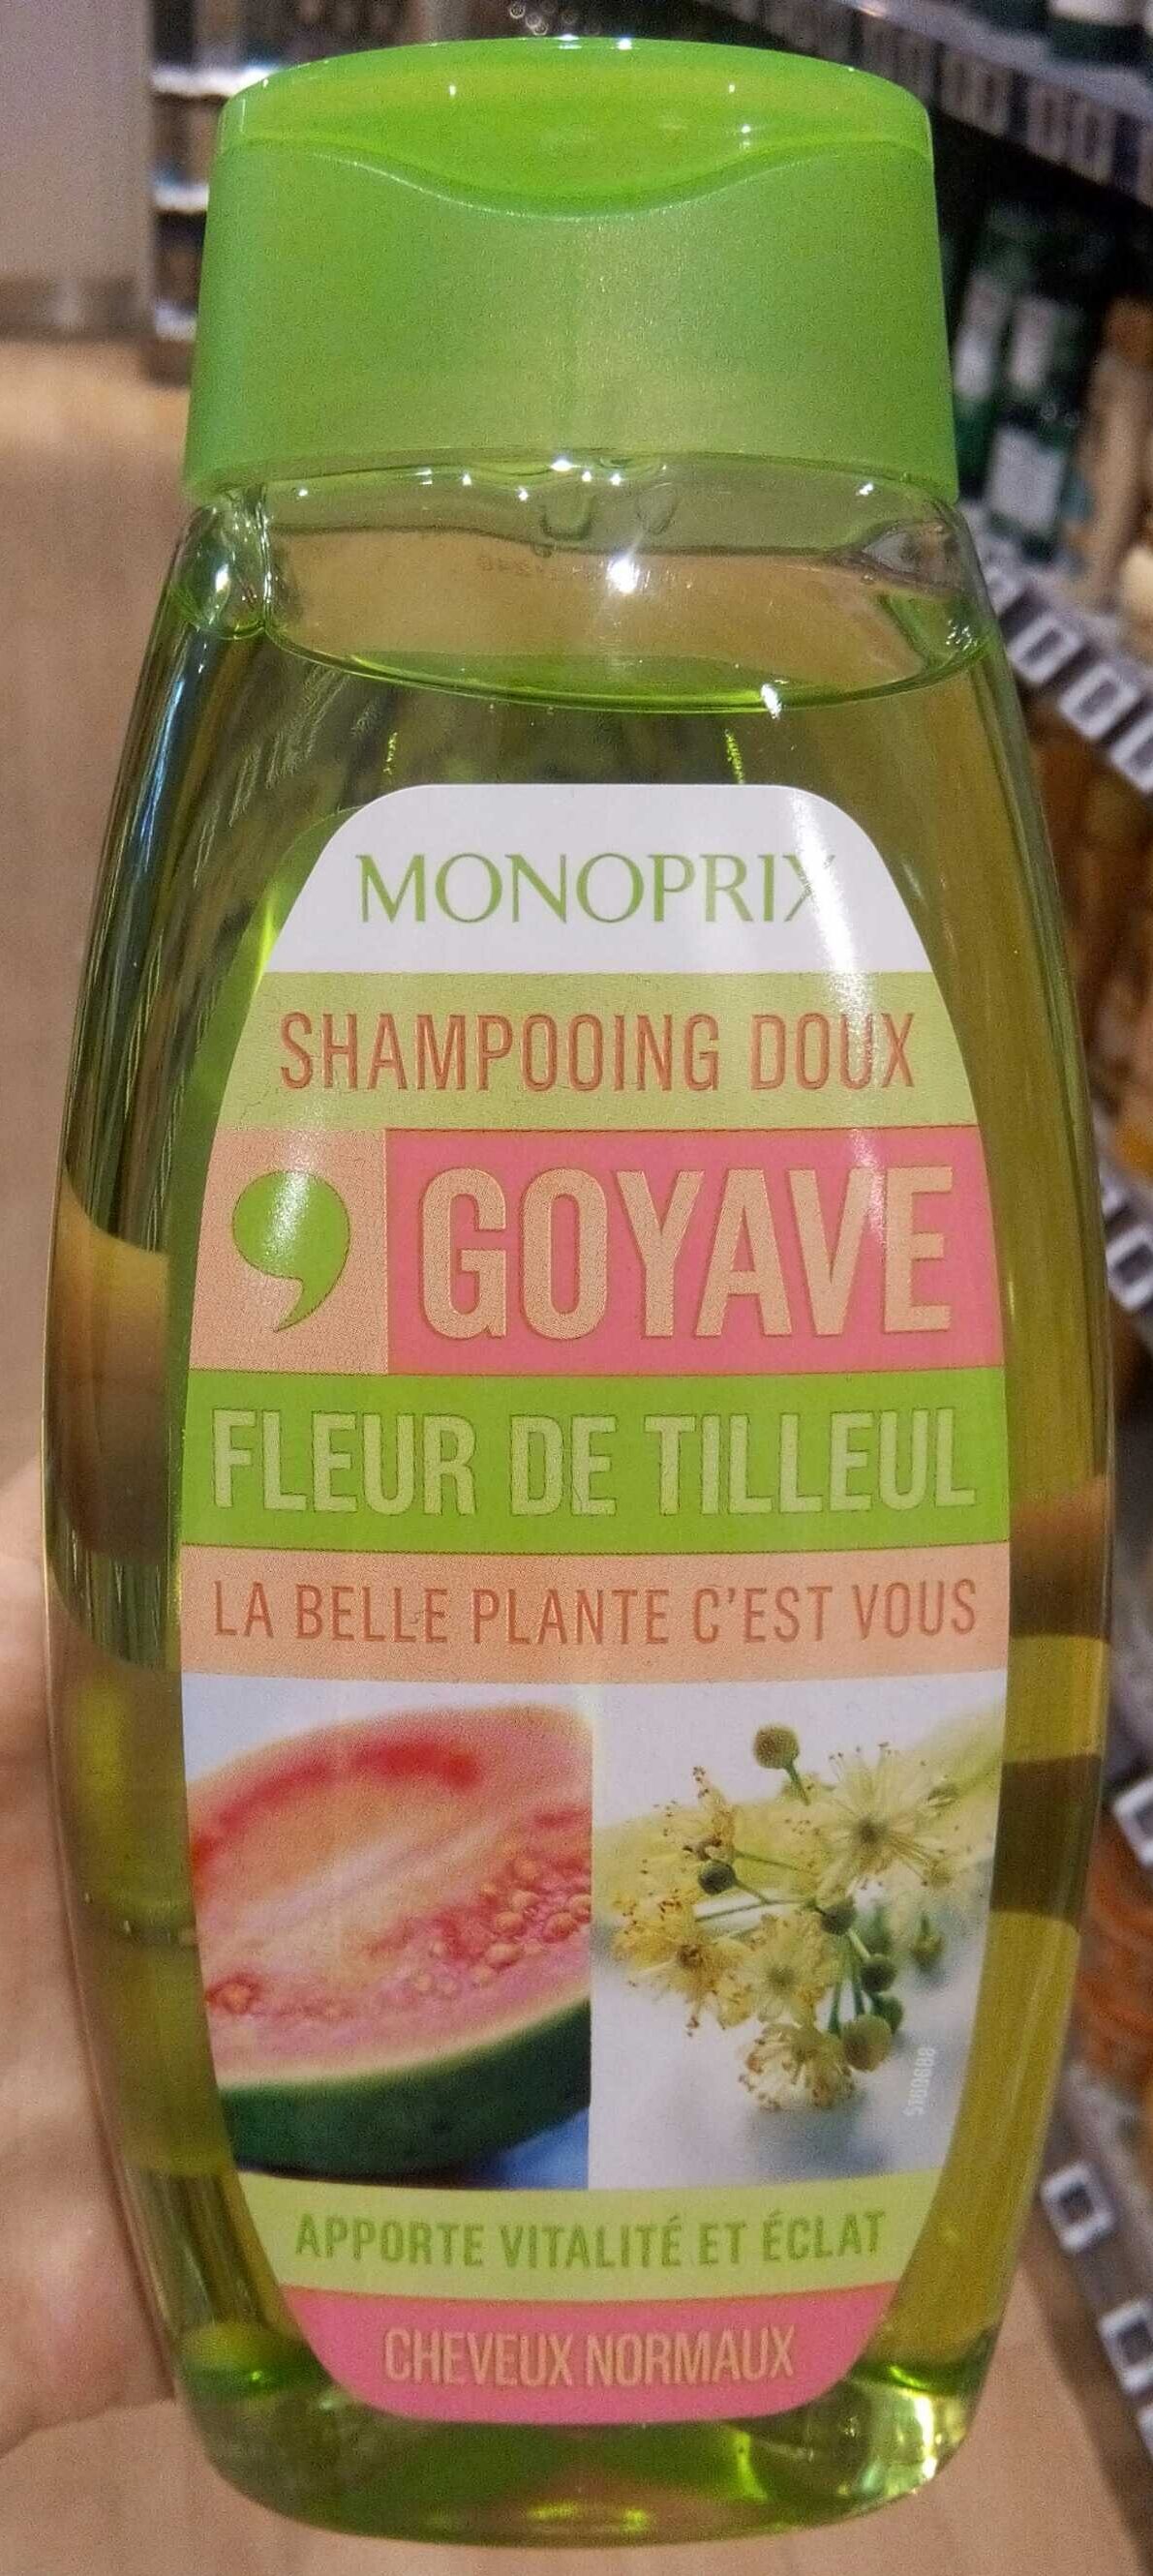 Shampooing doux goyave fleur de tilleul - Produit - fr